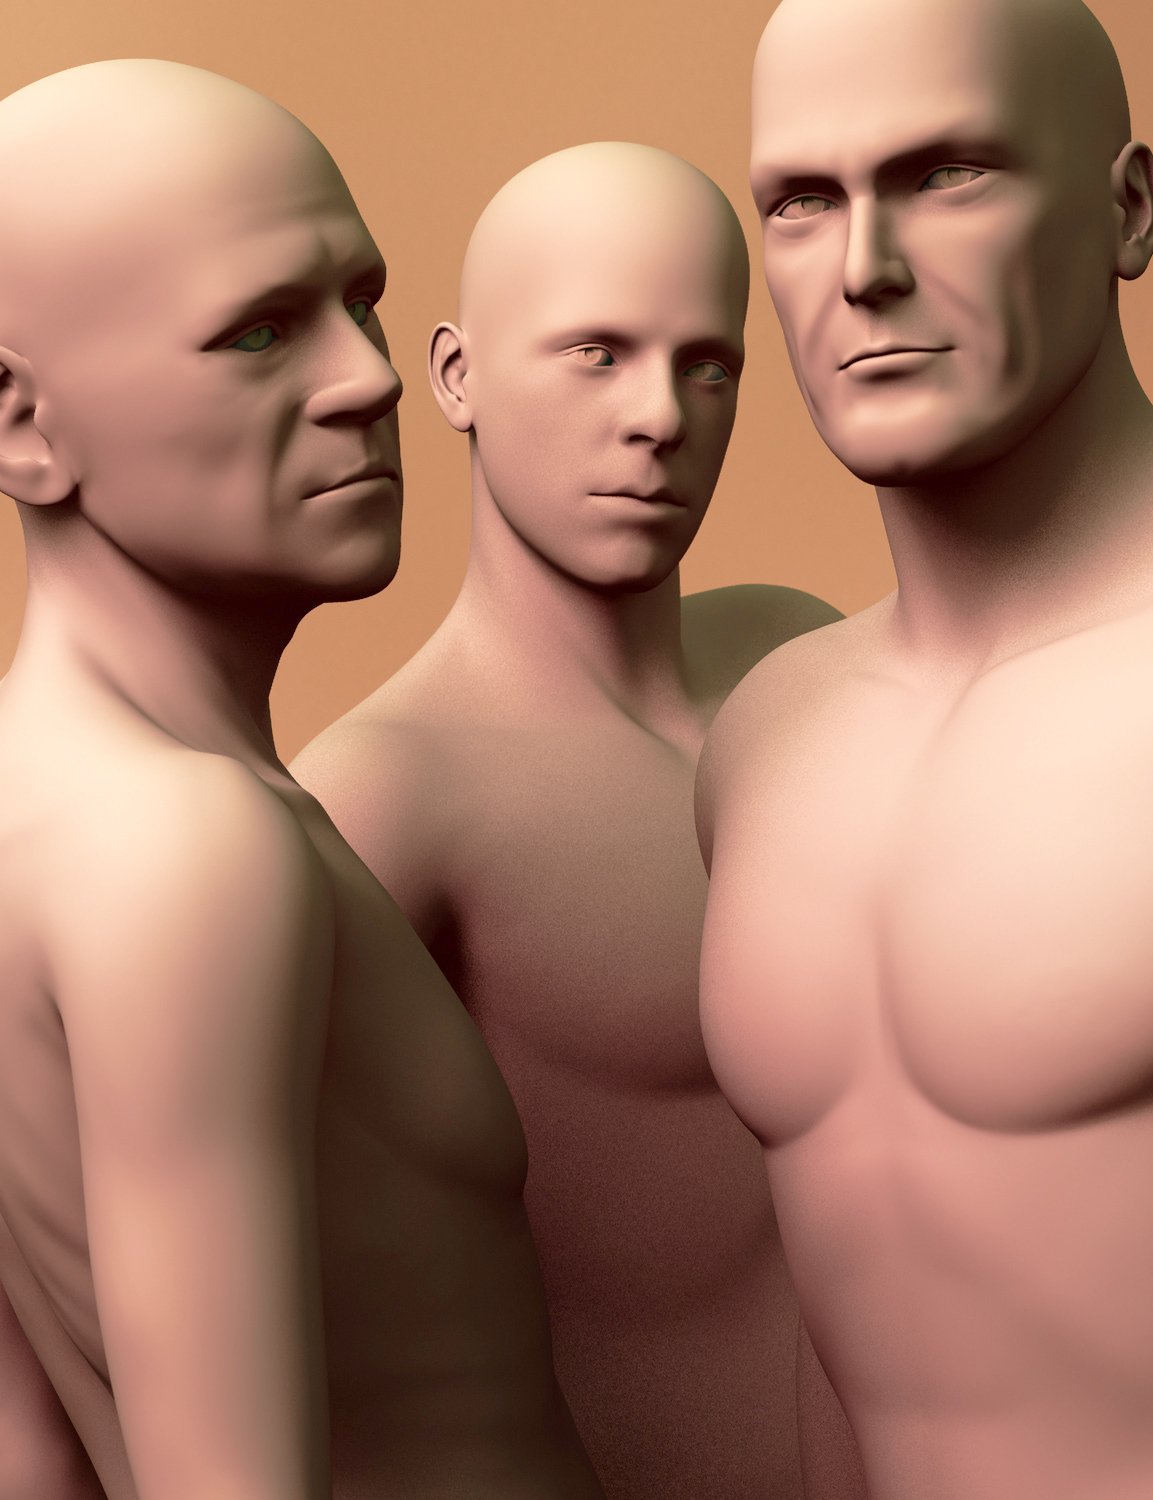 ExtraOrdinary Men for Genesis 2 Male(s) Volume 1 by: JoeQuick, 3D Models by Daz 3D